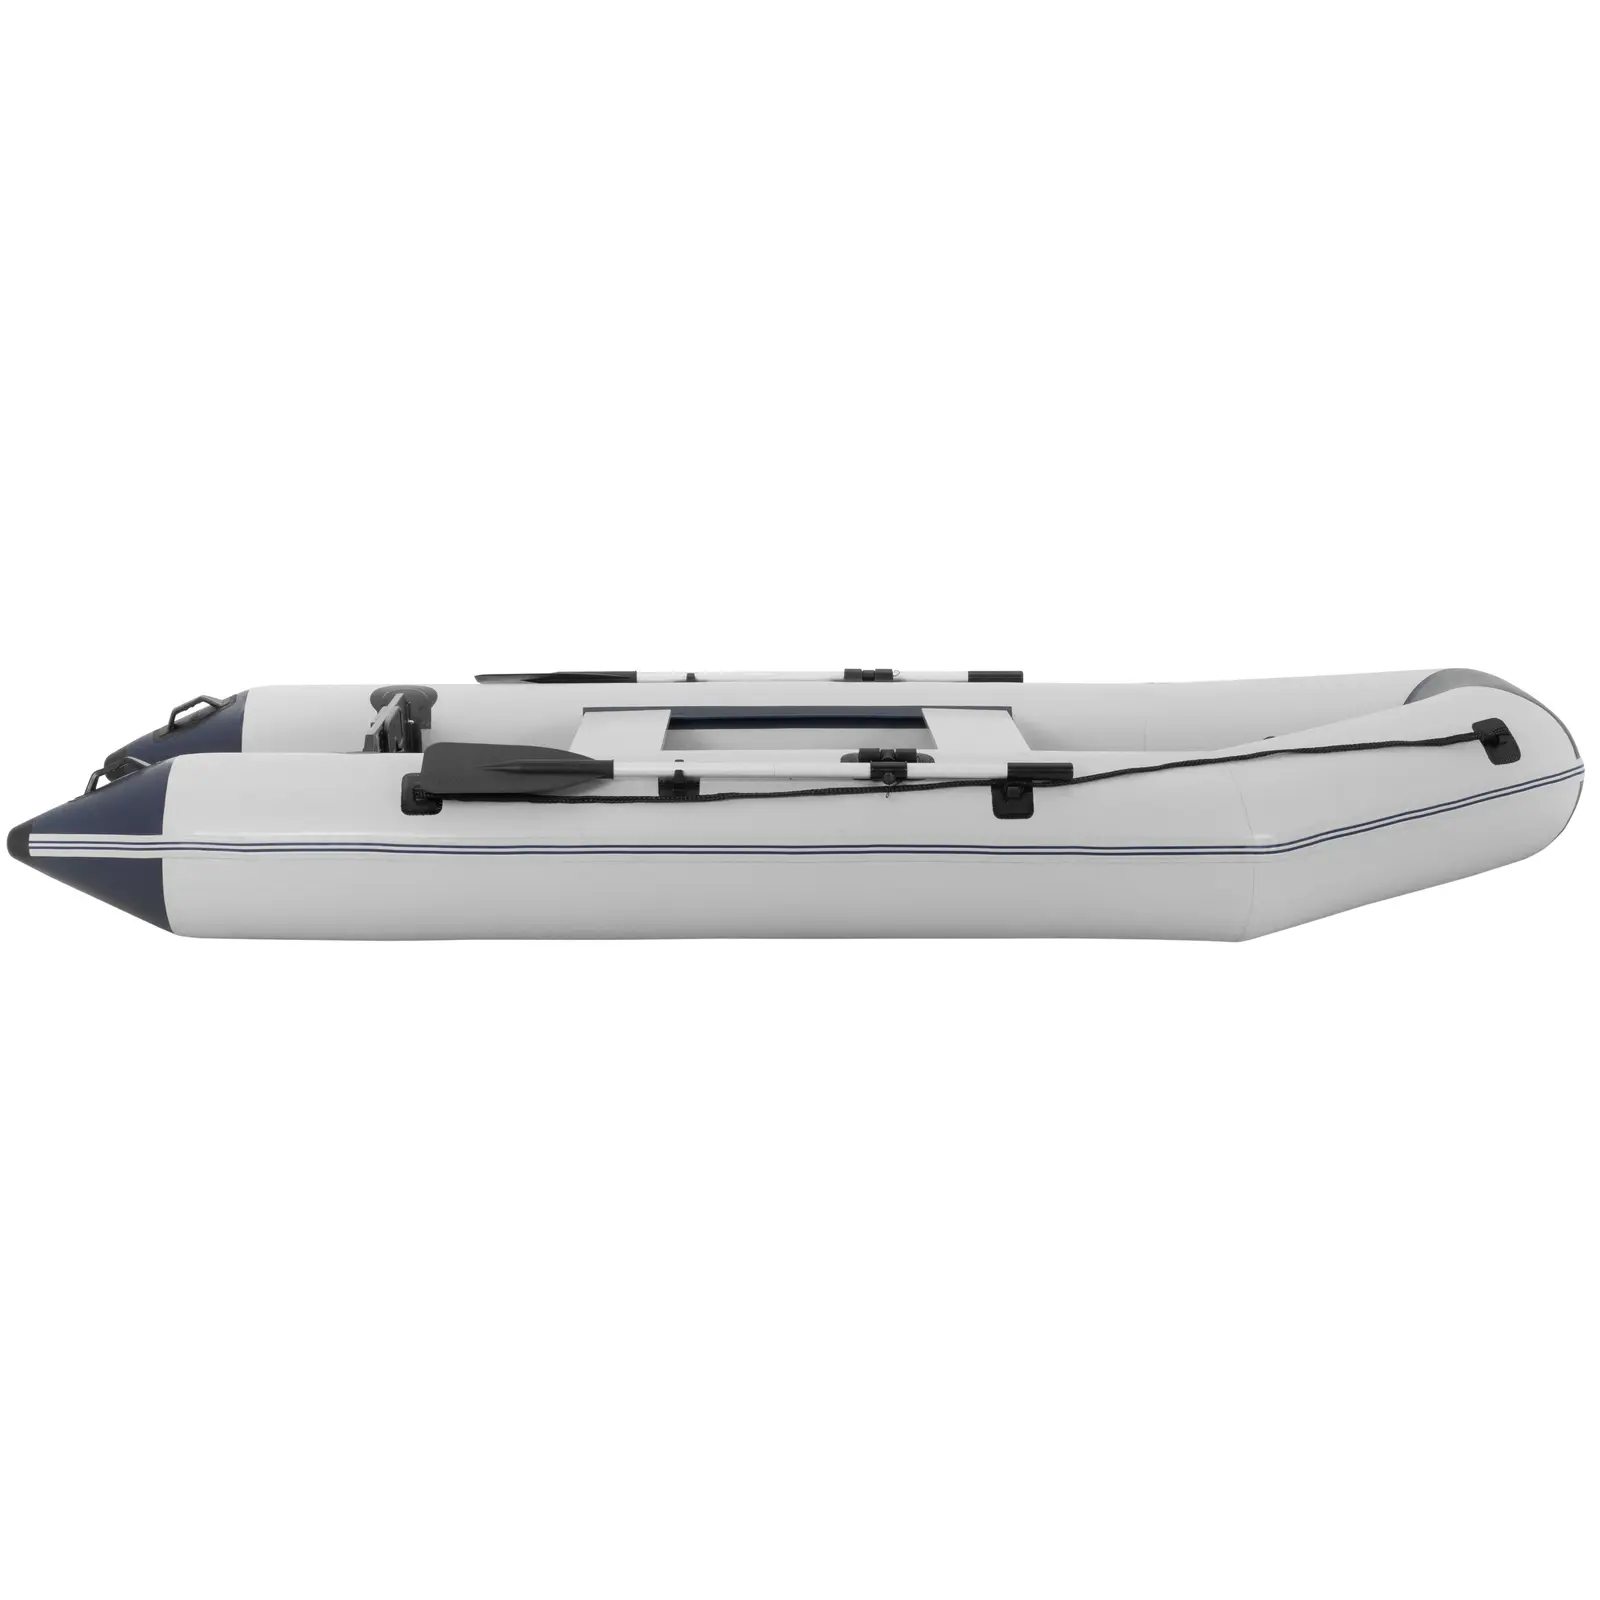 Nadmuchiwana łódź - czarny / biały - 403 kg - aluminiowa podłoga - 5 osób